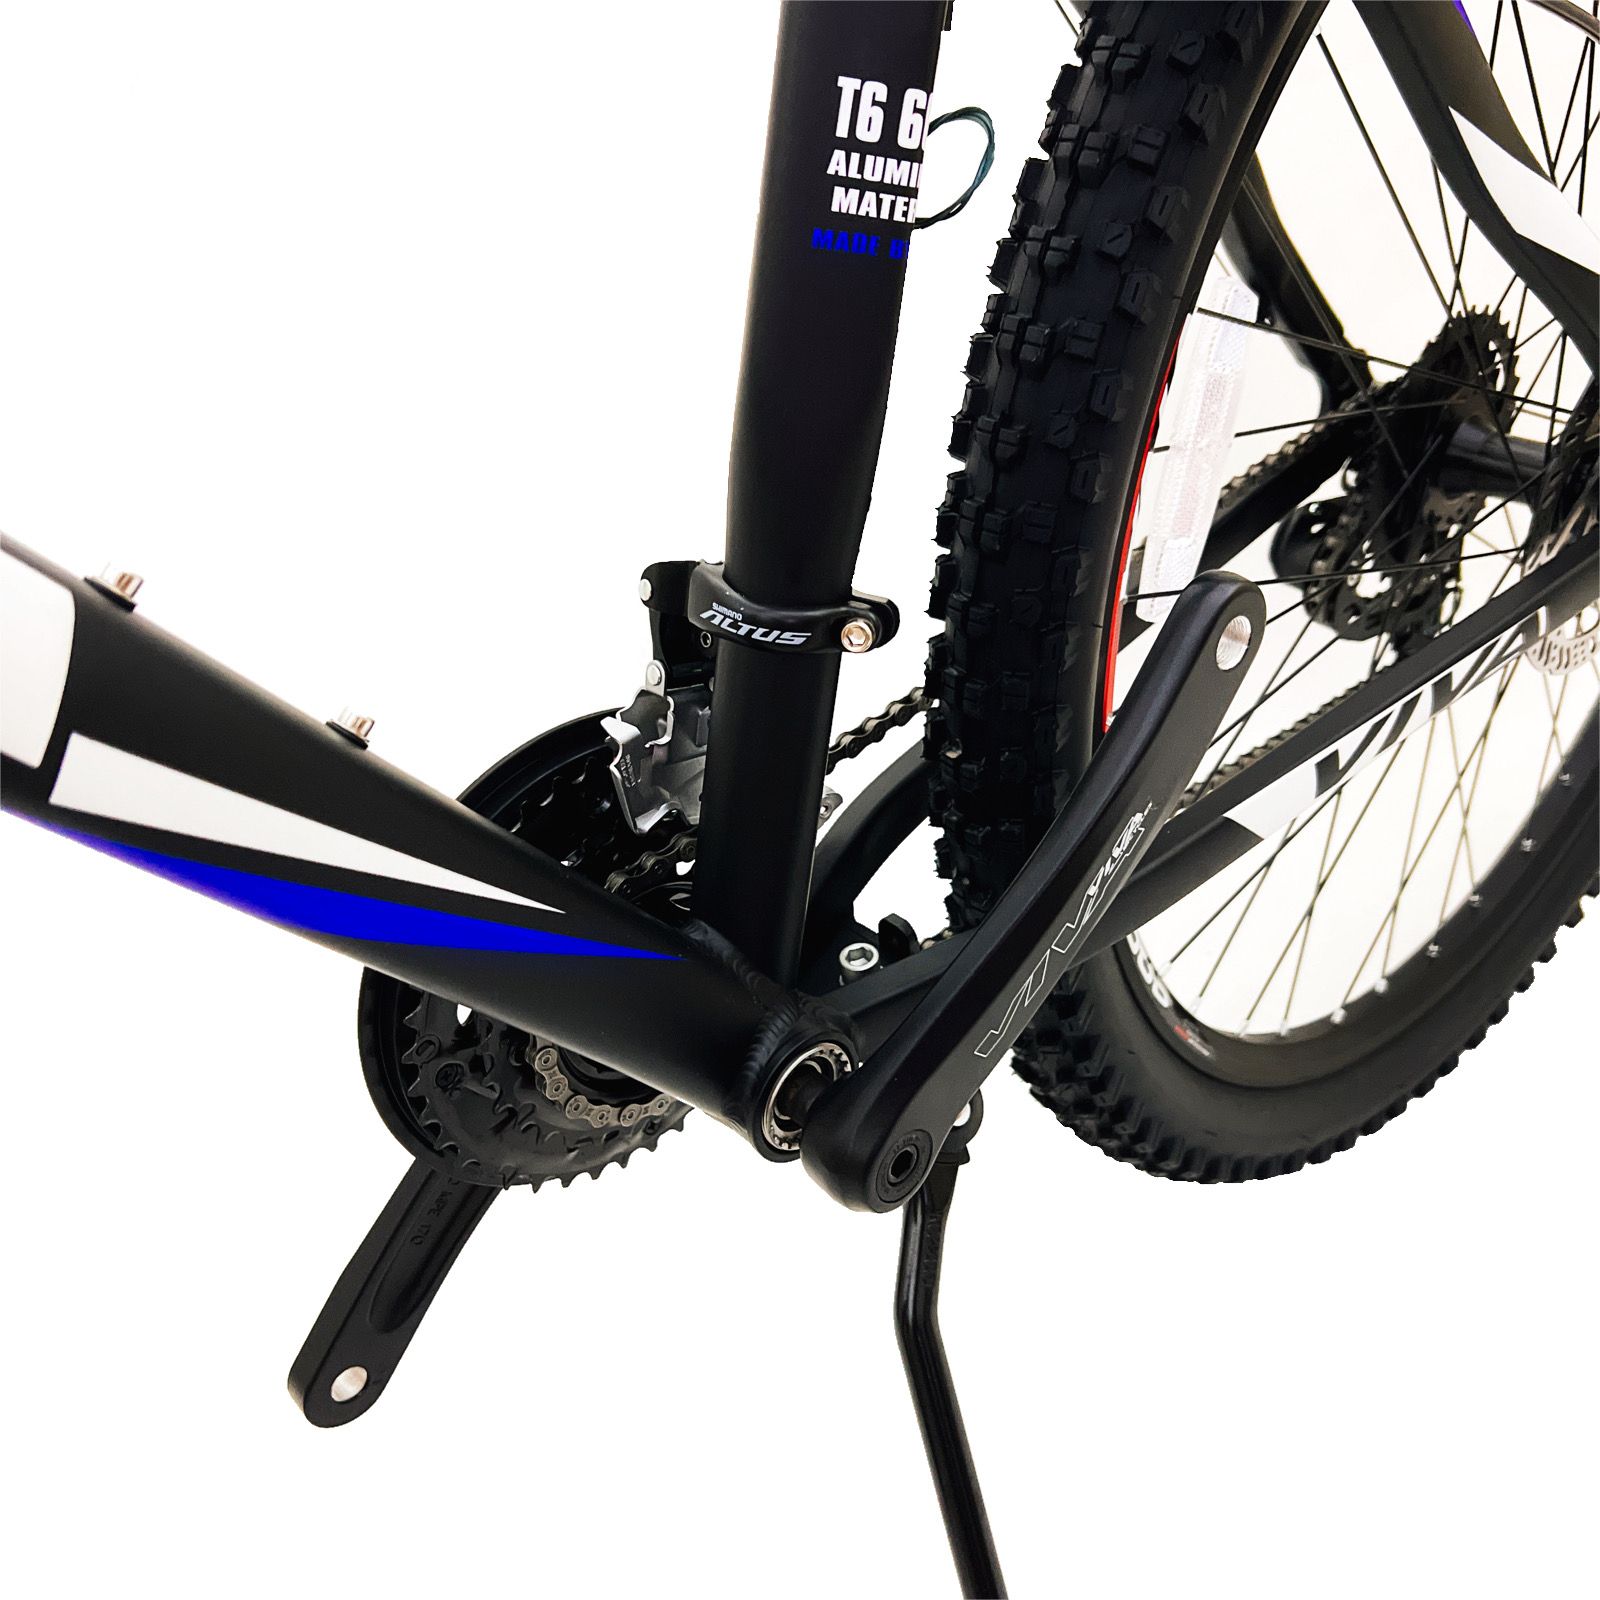 دوچرخه کوهستان ویوا مدل  BLAZE کد 27 سایز 27.5 -  - 11